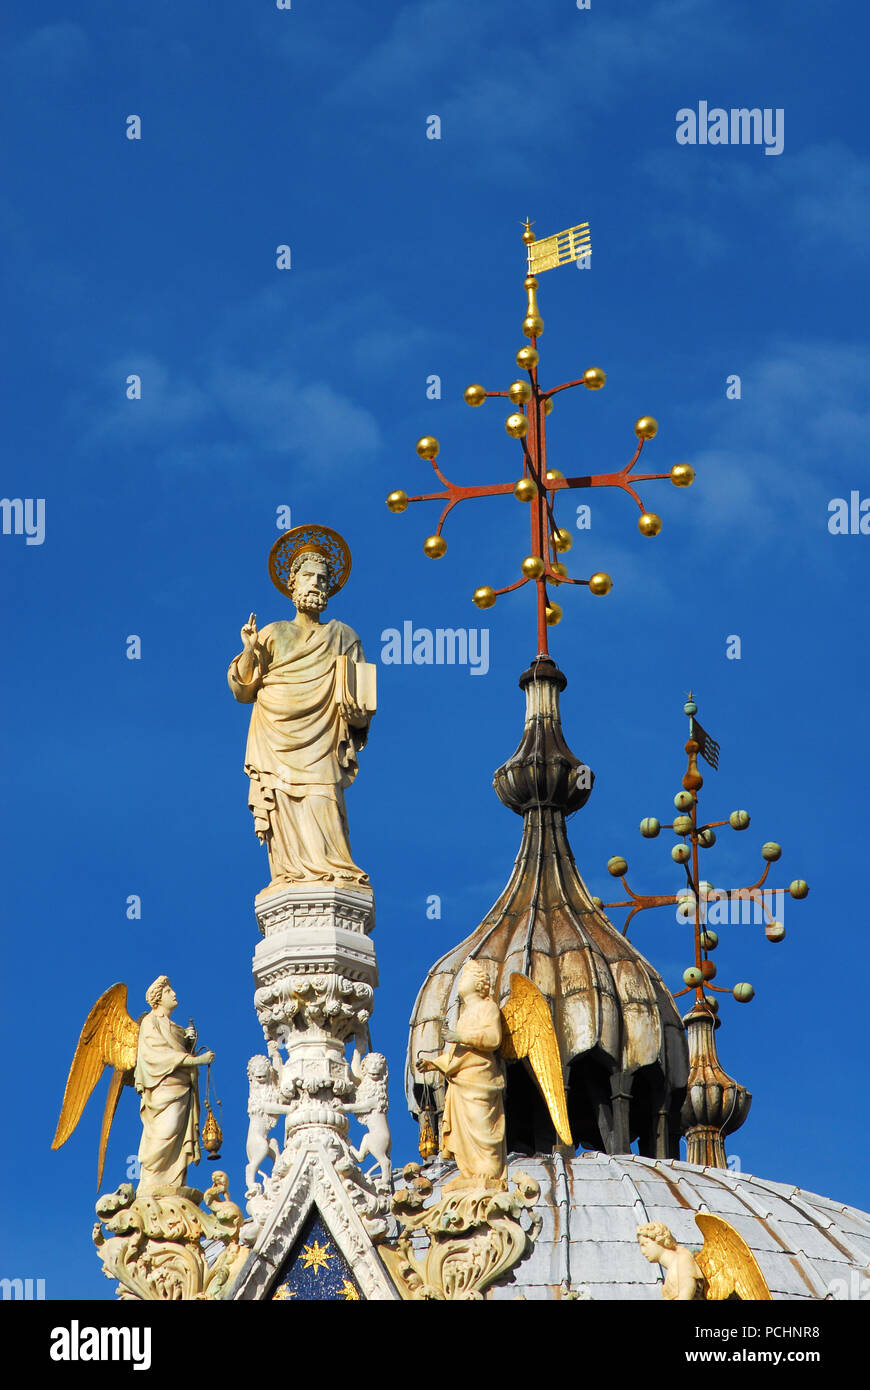 San Marco tra angeli statue guglia gotica nella parte superiore della cattedrale di Venezia con stile bizantino cupola in background (XIII-XIV secolo) Foto Stock